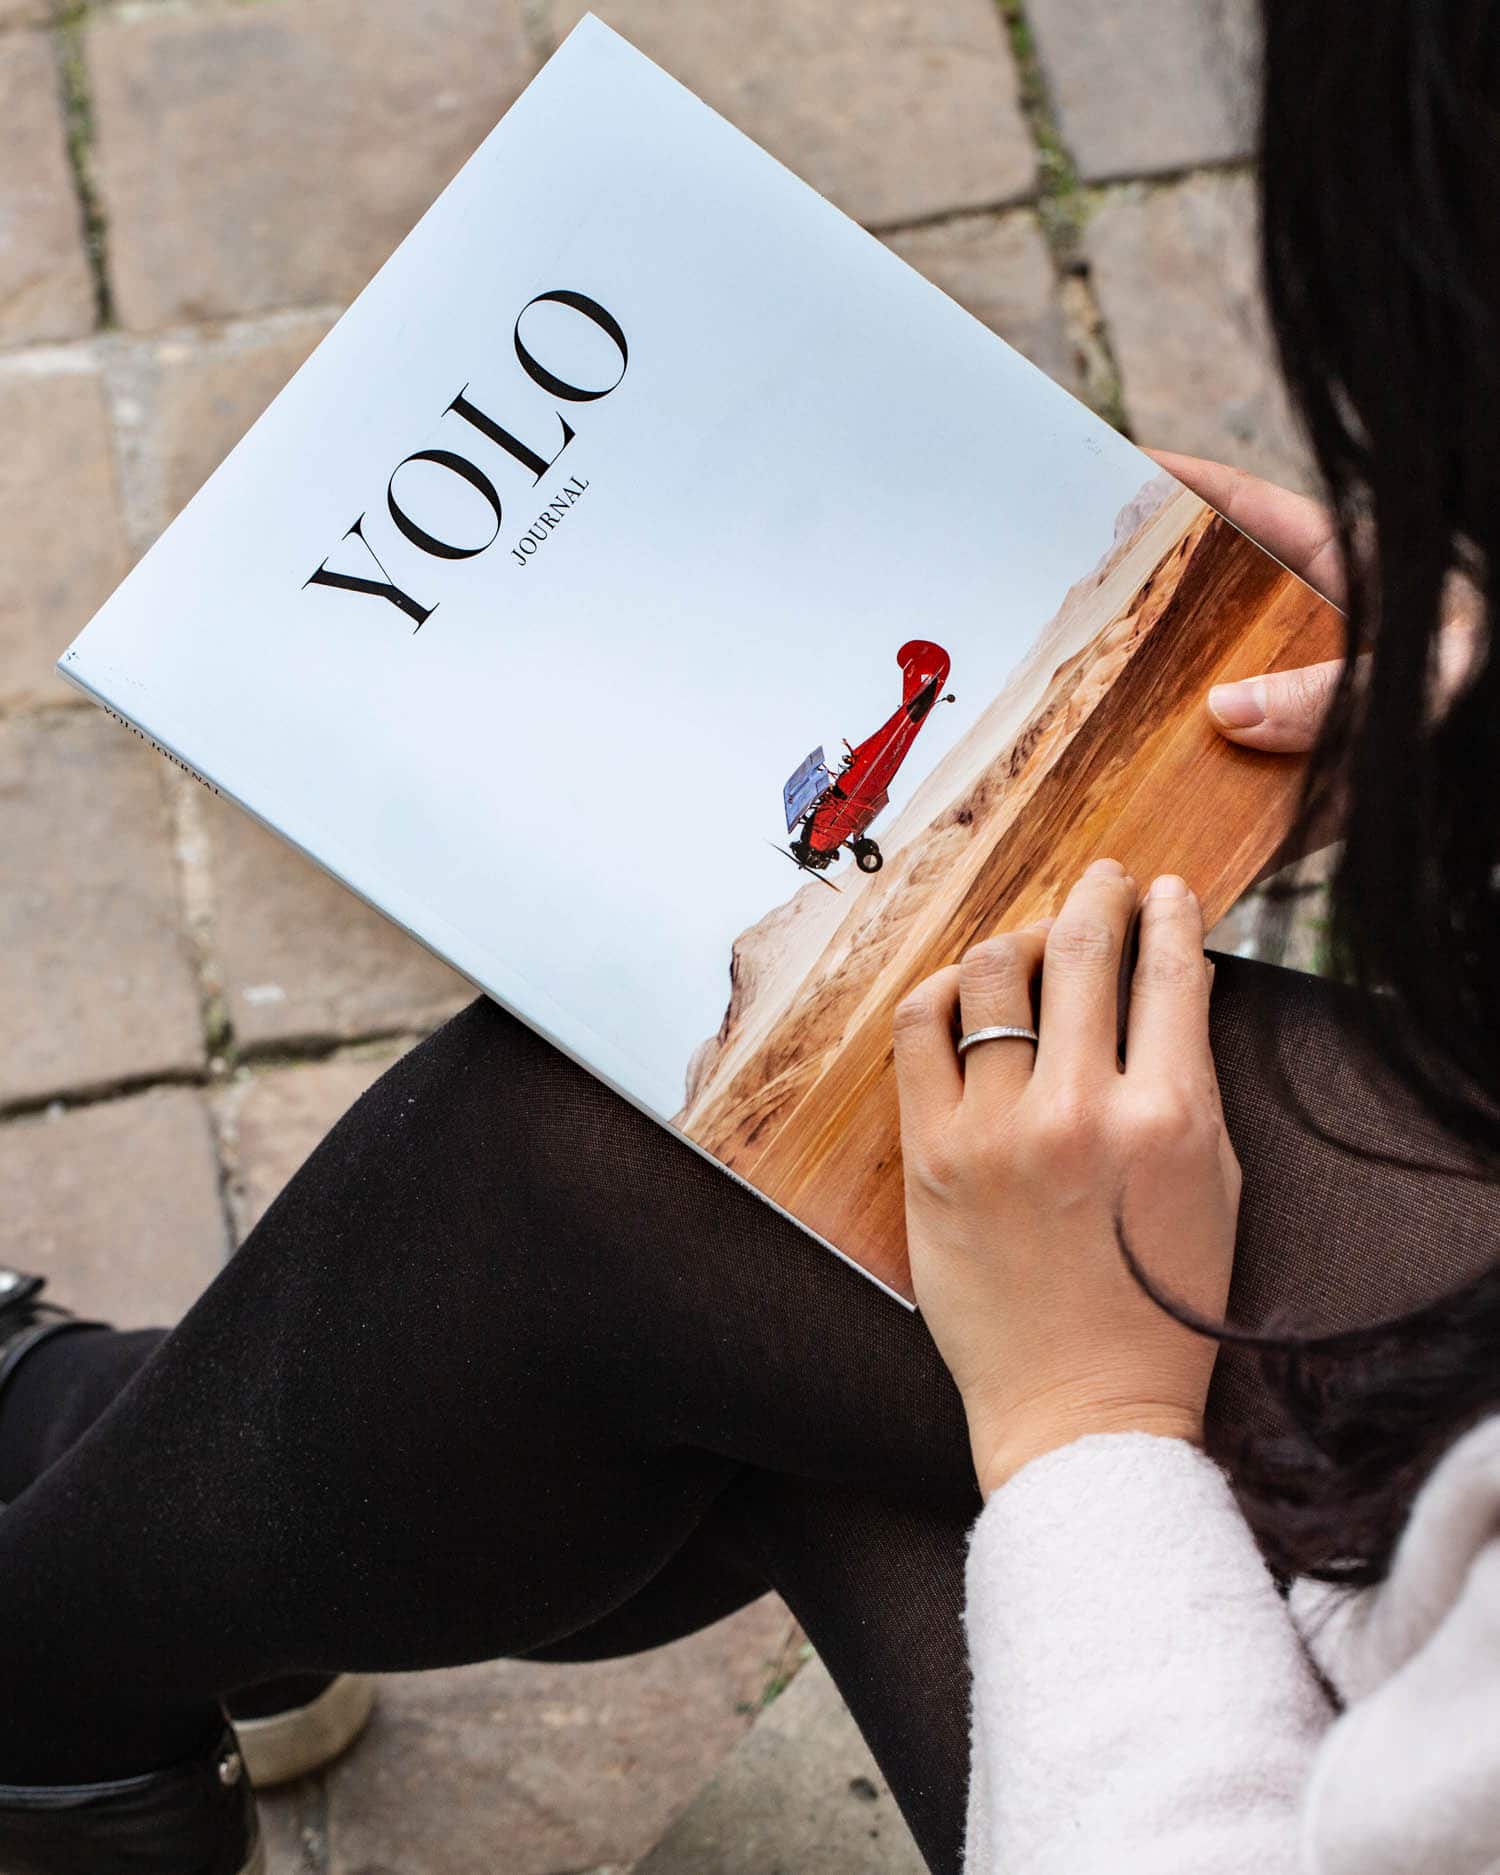 YOLO Journal - Fall/Winter 2020 - Vol. 5